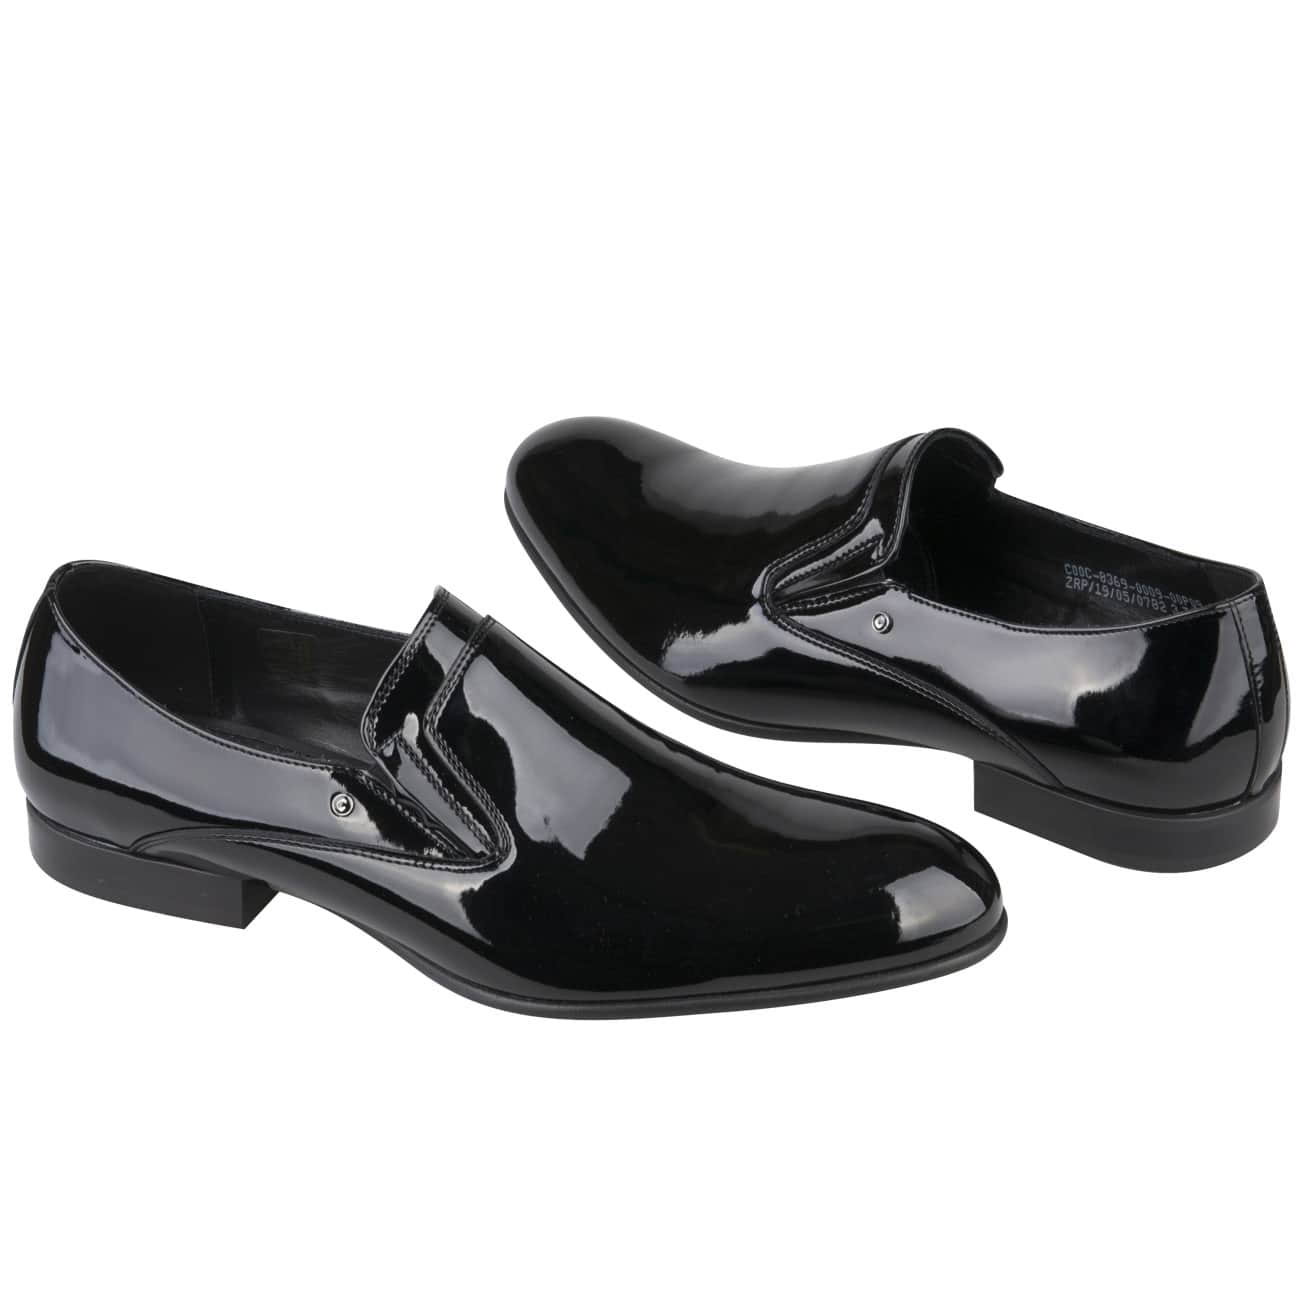 Кожаные лаковые мужские туфли черного цвета без шнурков купить в интернетмагазине Kwinto - товара нет в наличии